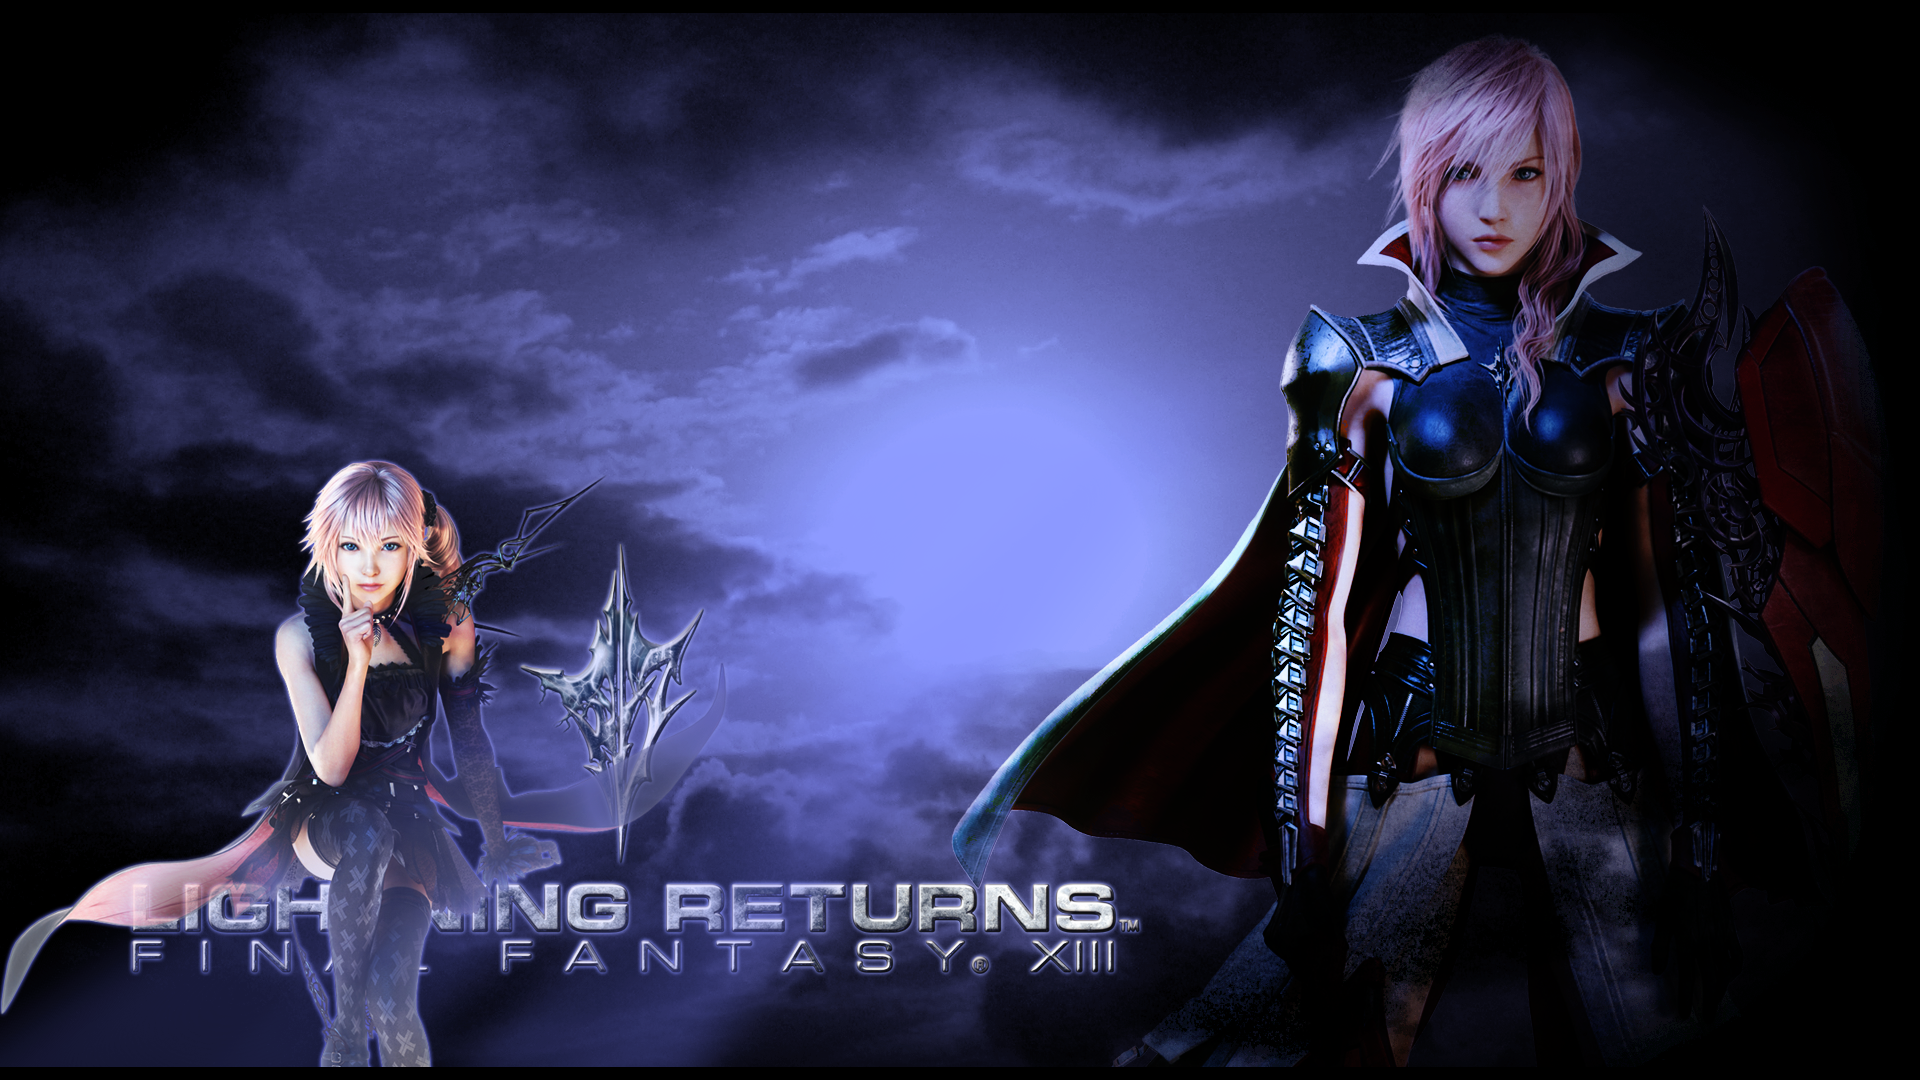 Lightning Returns: Final Fantasy XIII #2